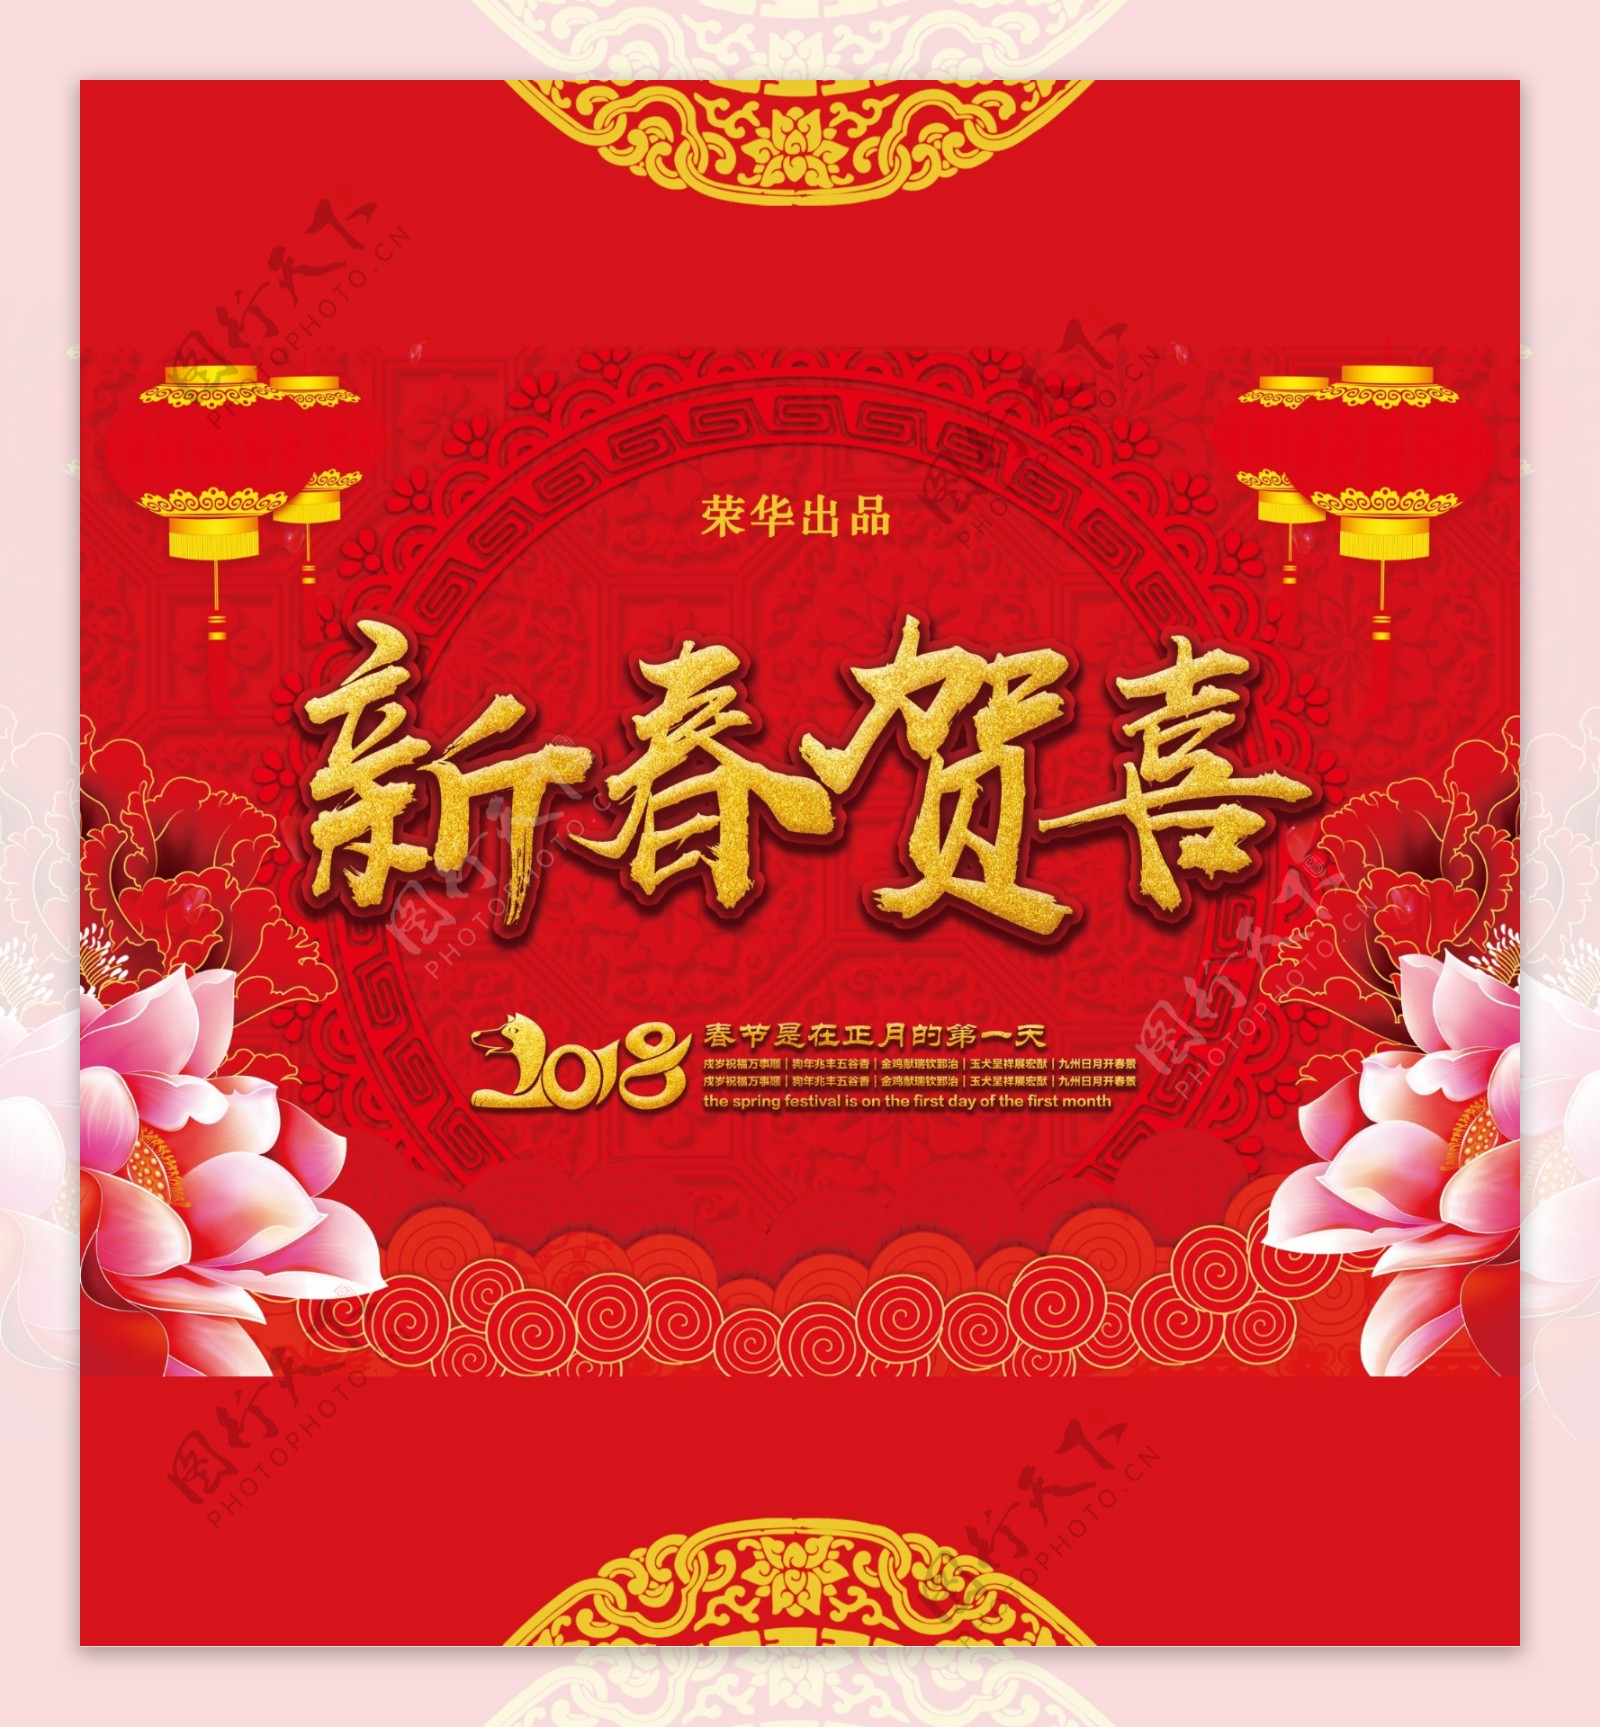 中国风背景新春贺喜礼盒包装设计